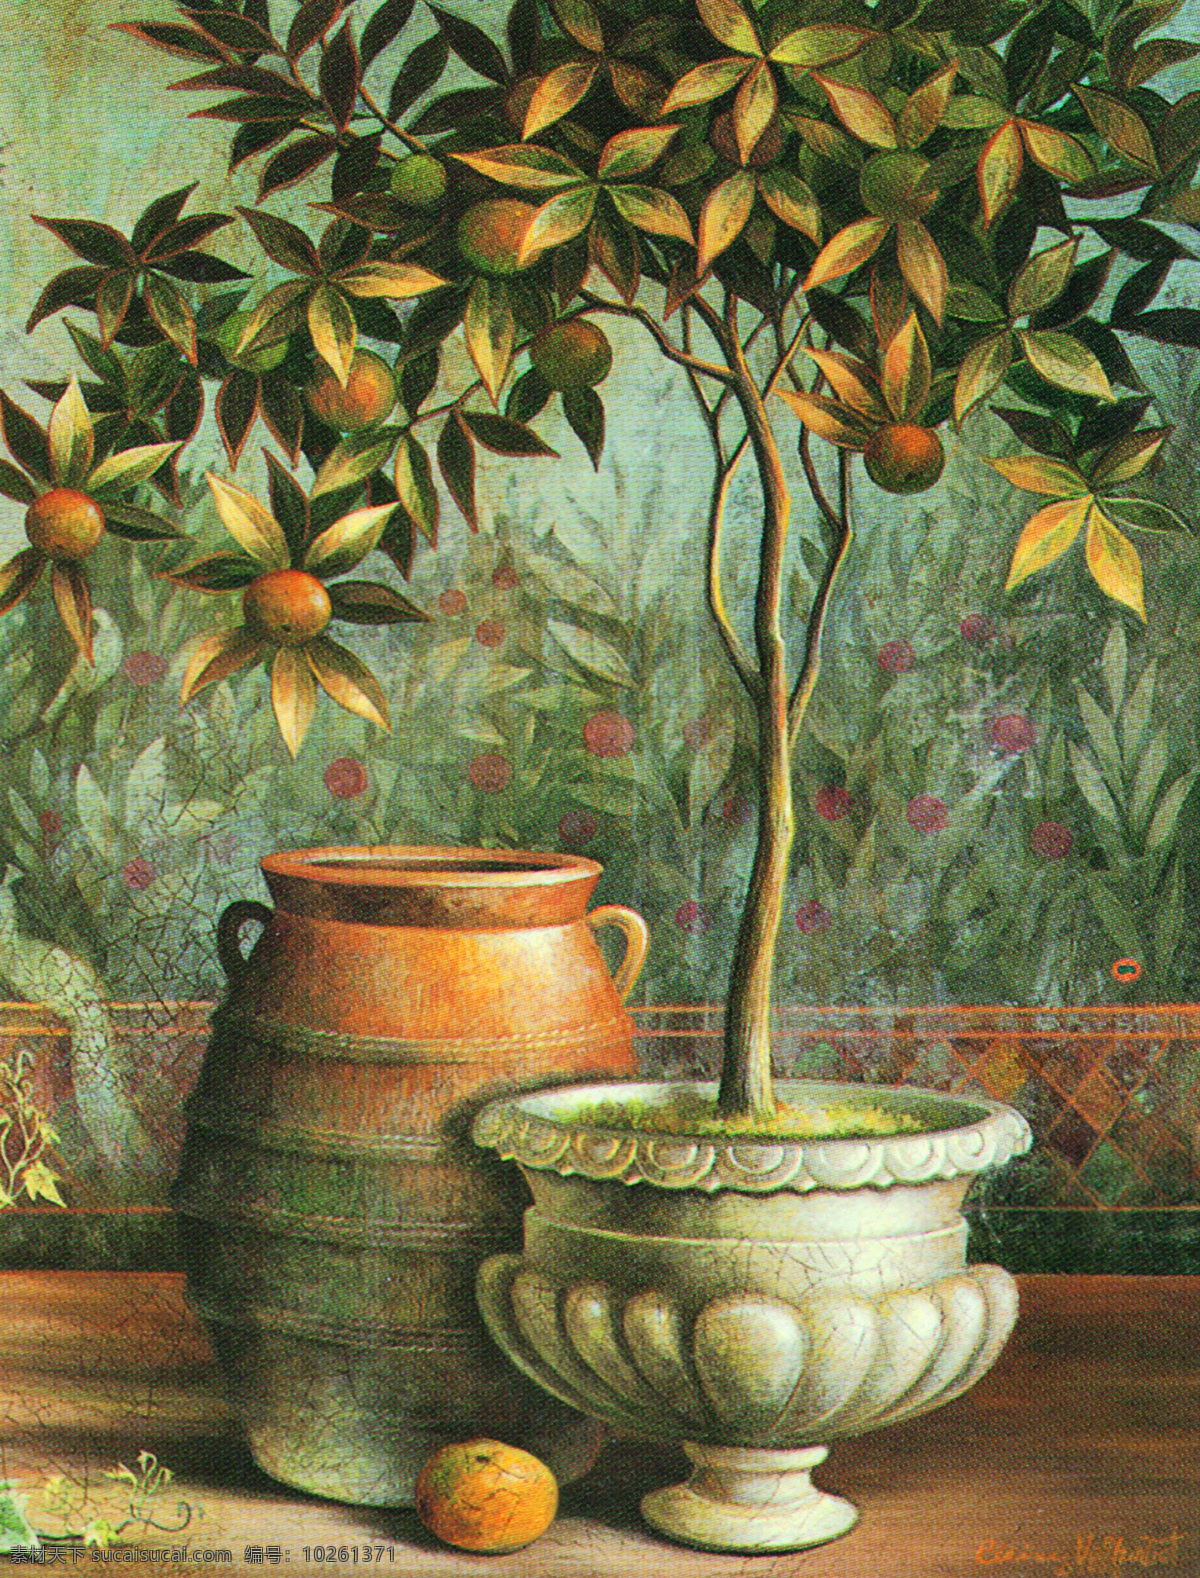 盆栽 植物 静物 写生 油画 水果植物 绘画 艺术 水墨 花草 画 水墨画 风景 其他艺术 文化艺术 黑色